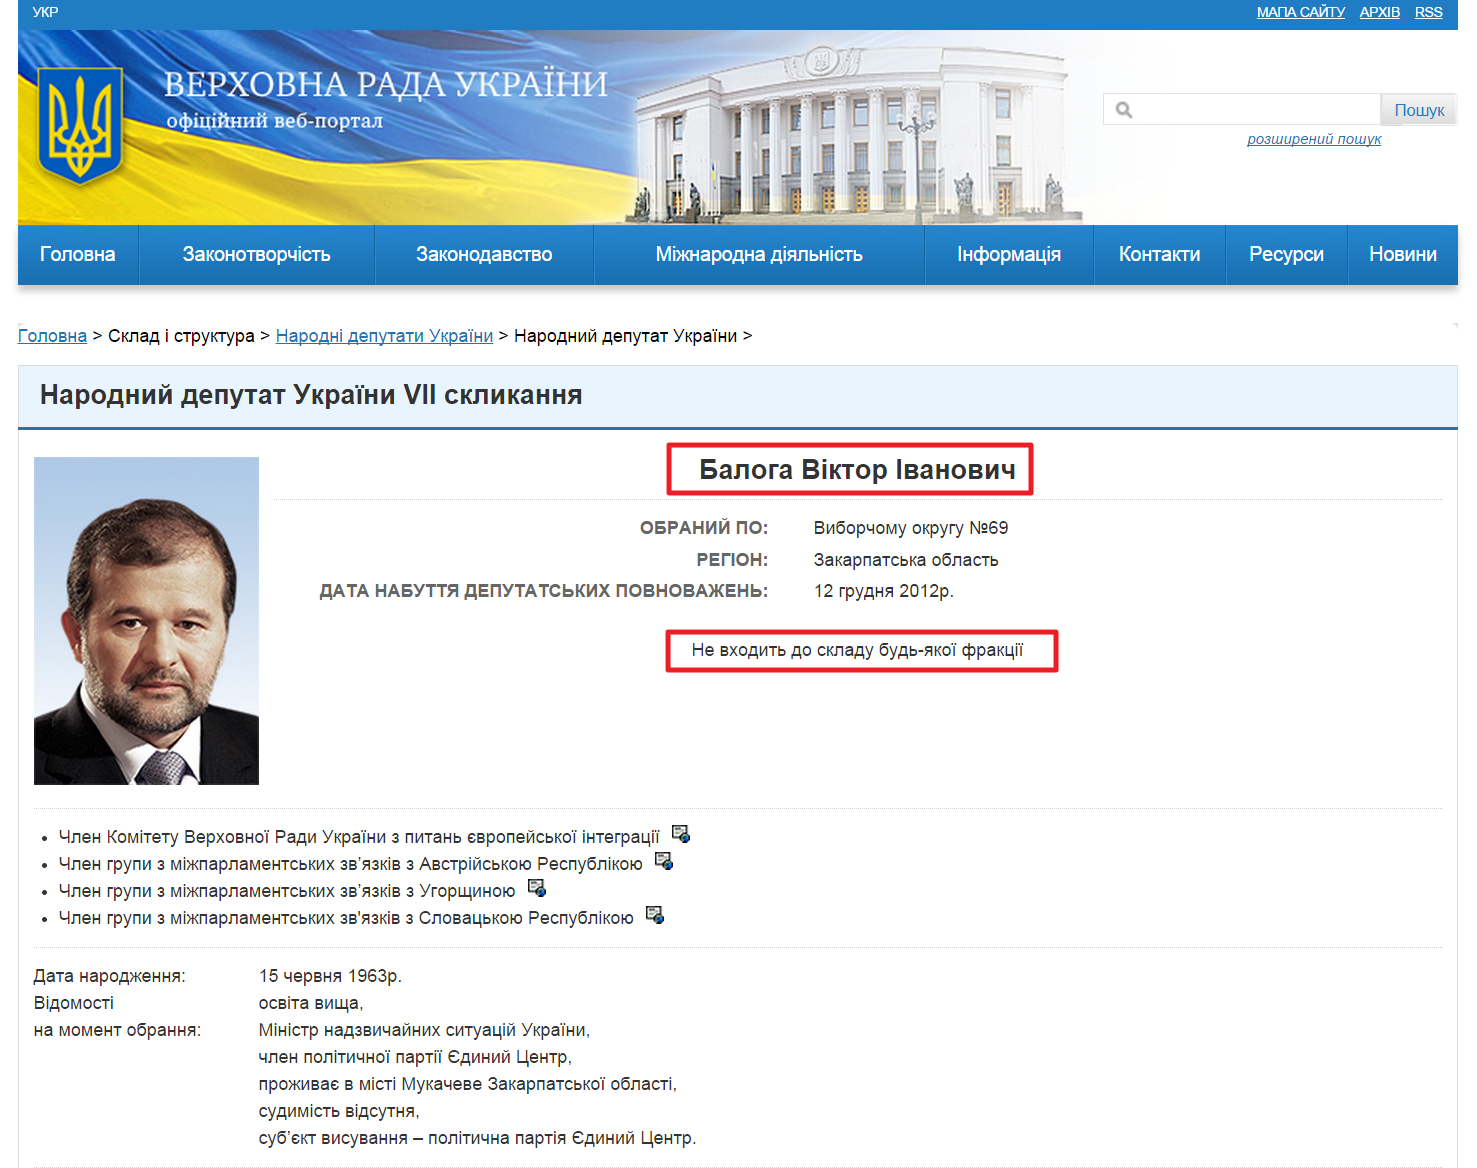 http://gapp.rada.gov.ua/mps/info/page/5566